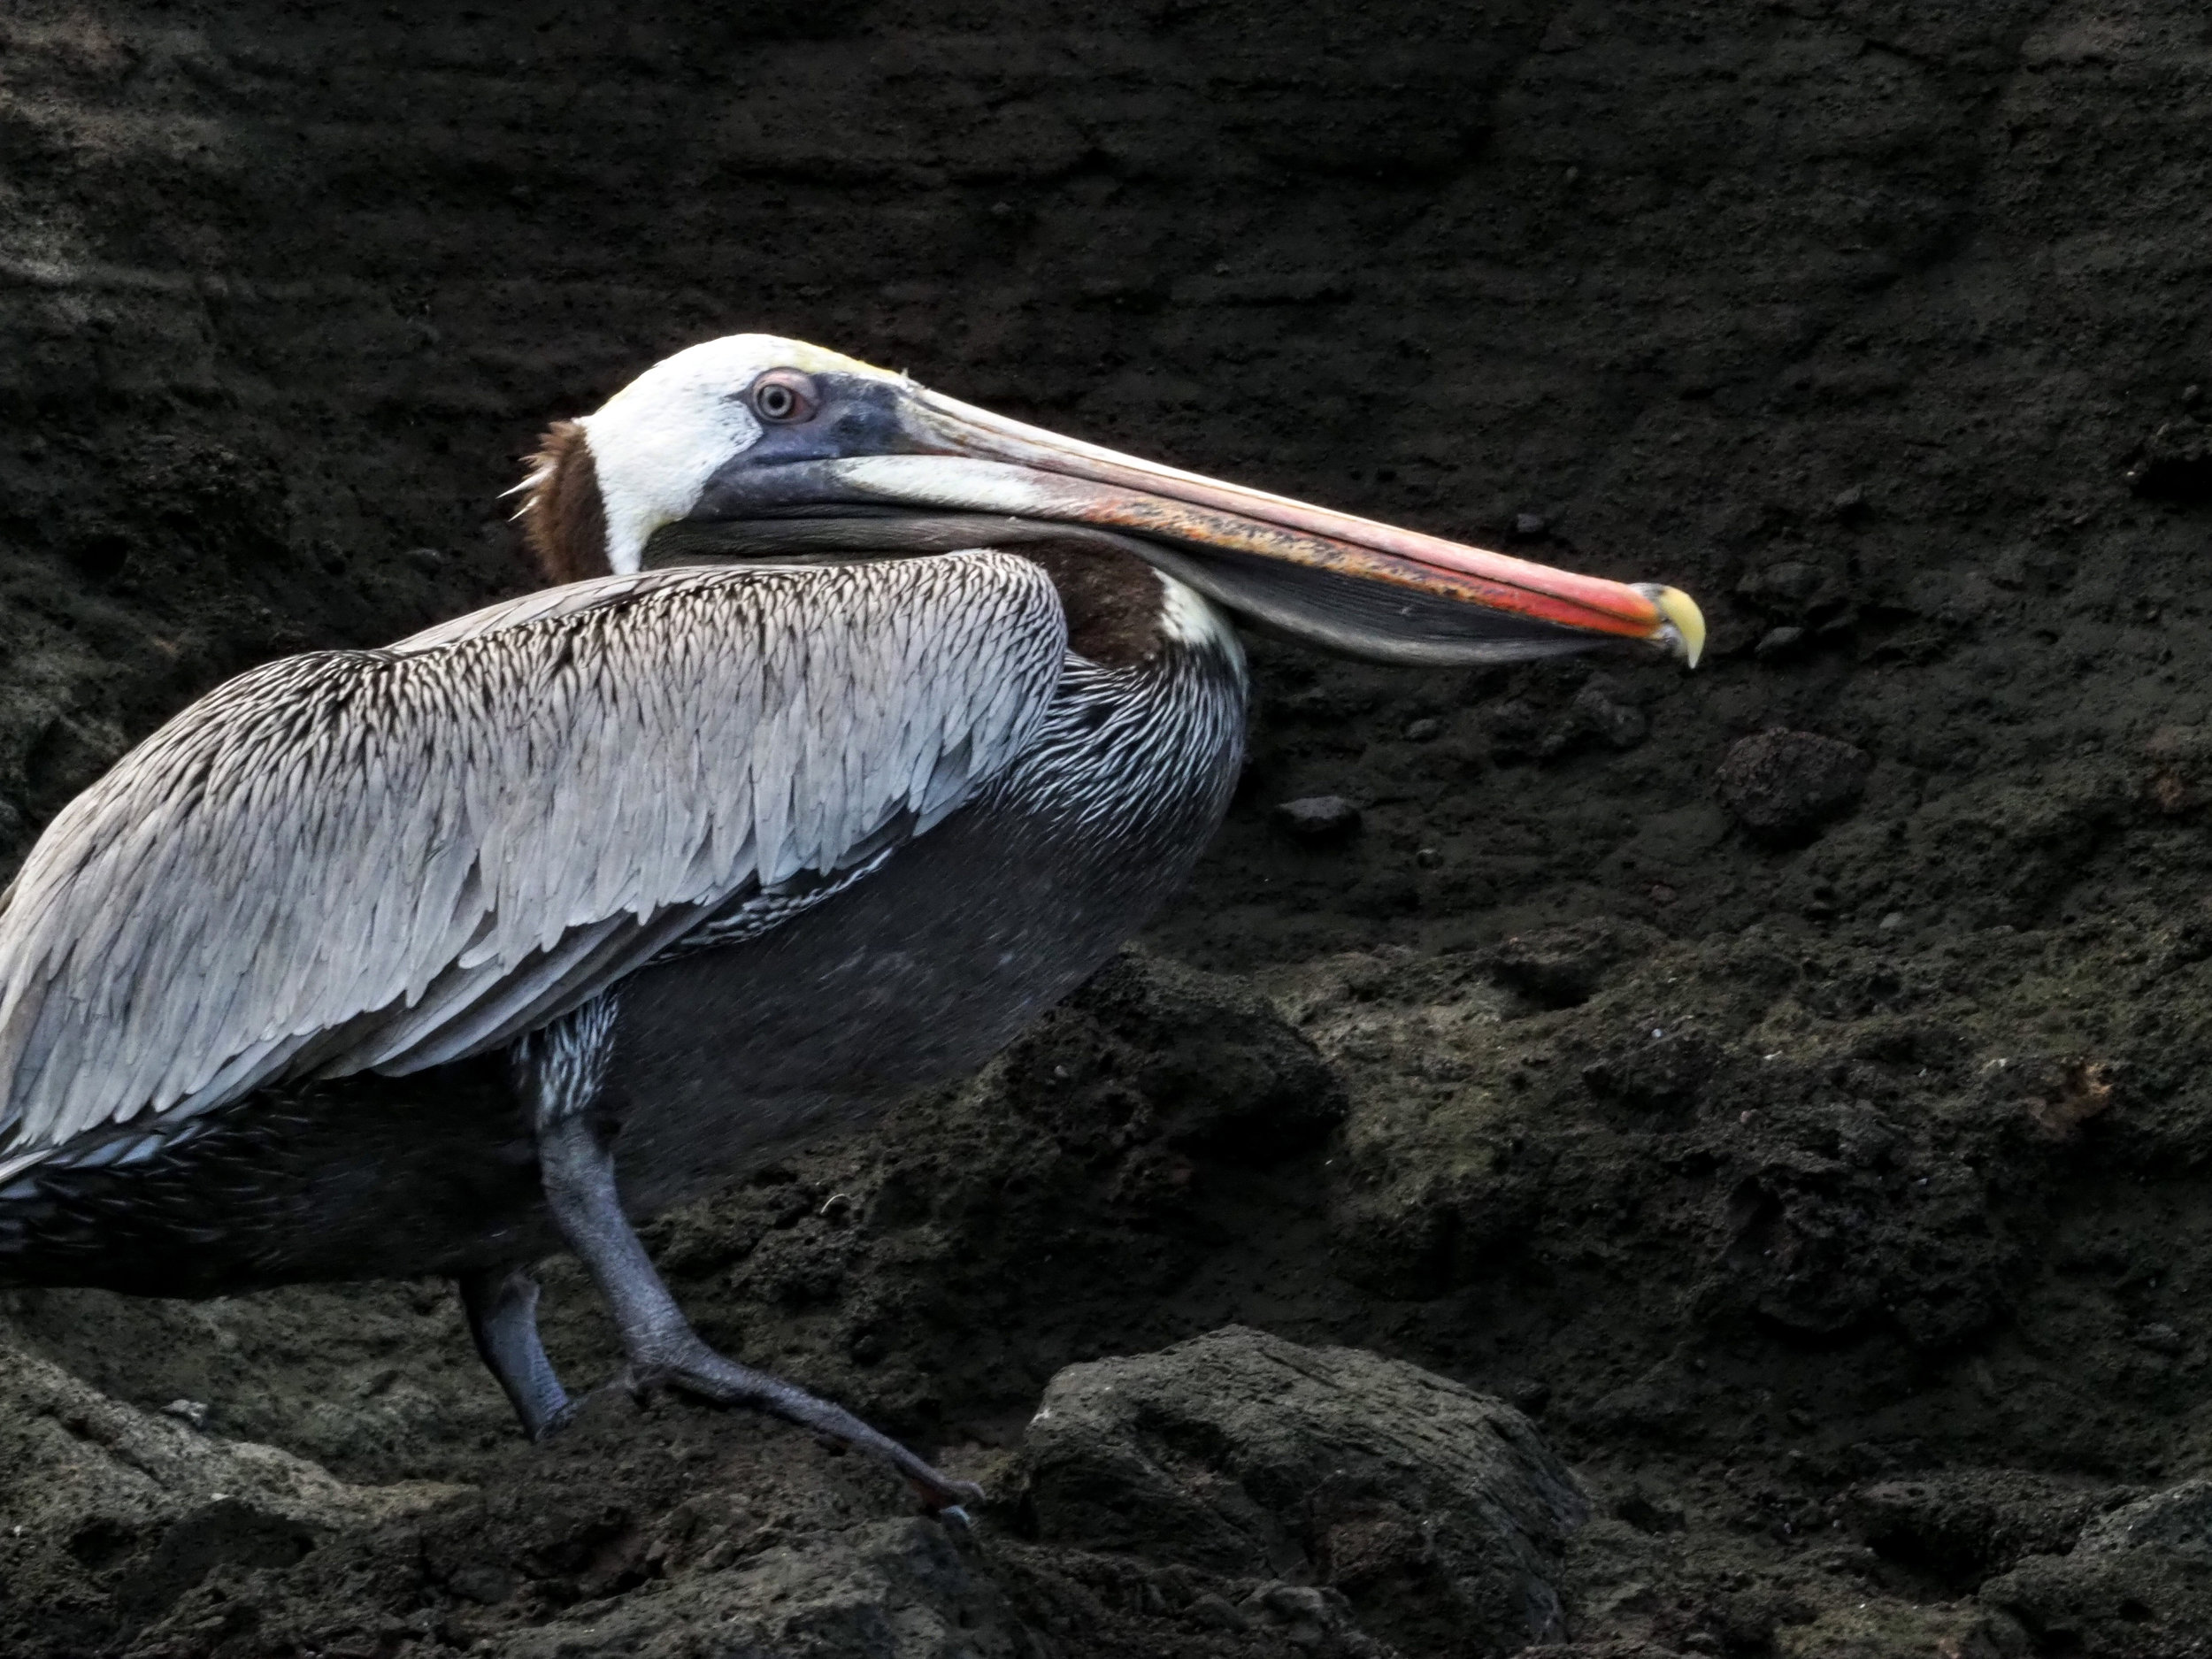  brown pelican, Buccaneer's Cove, Santiago Island 